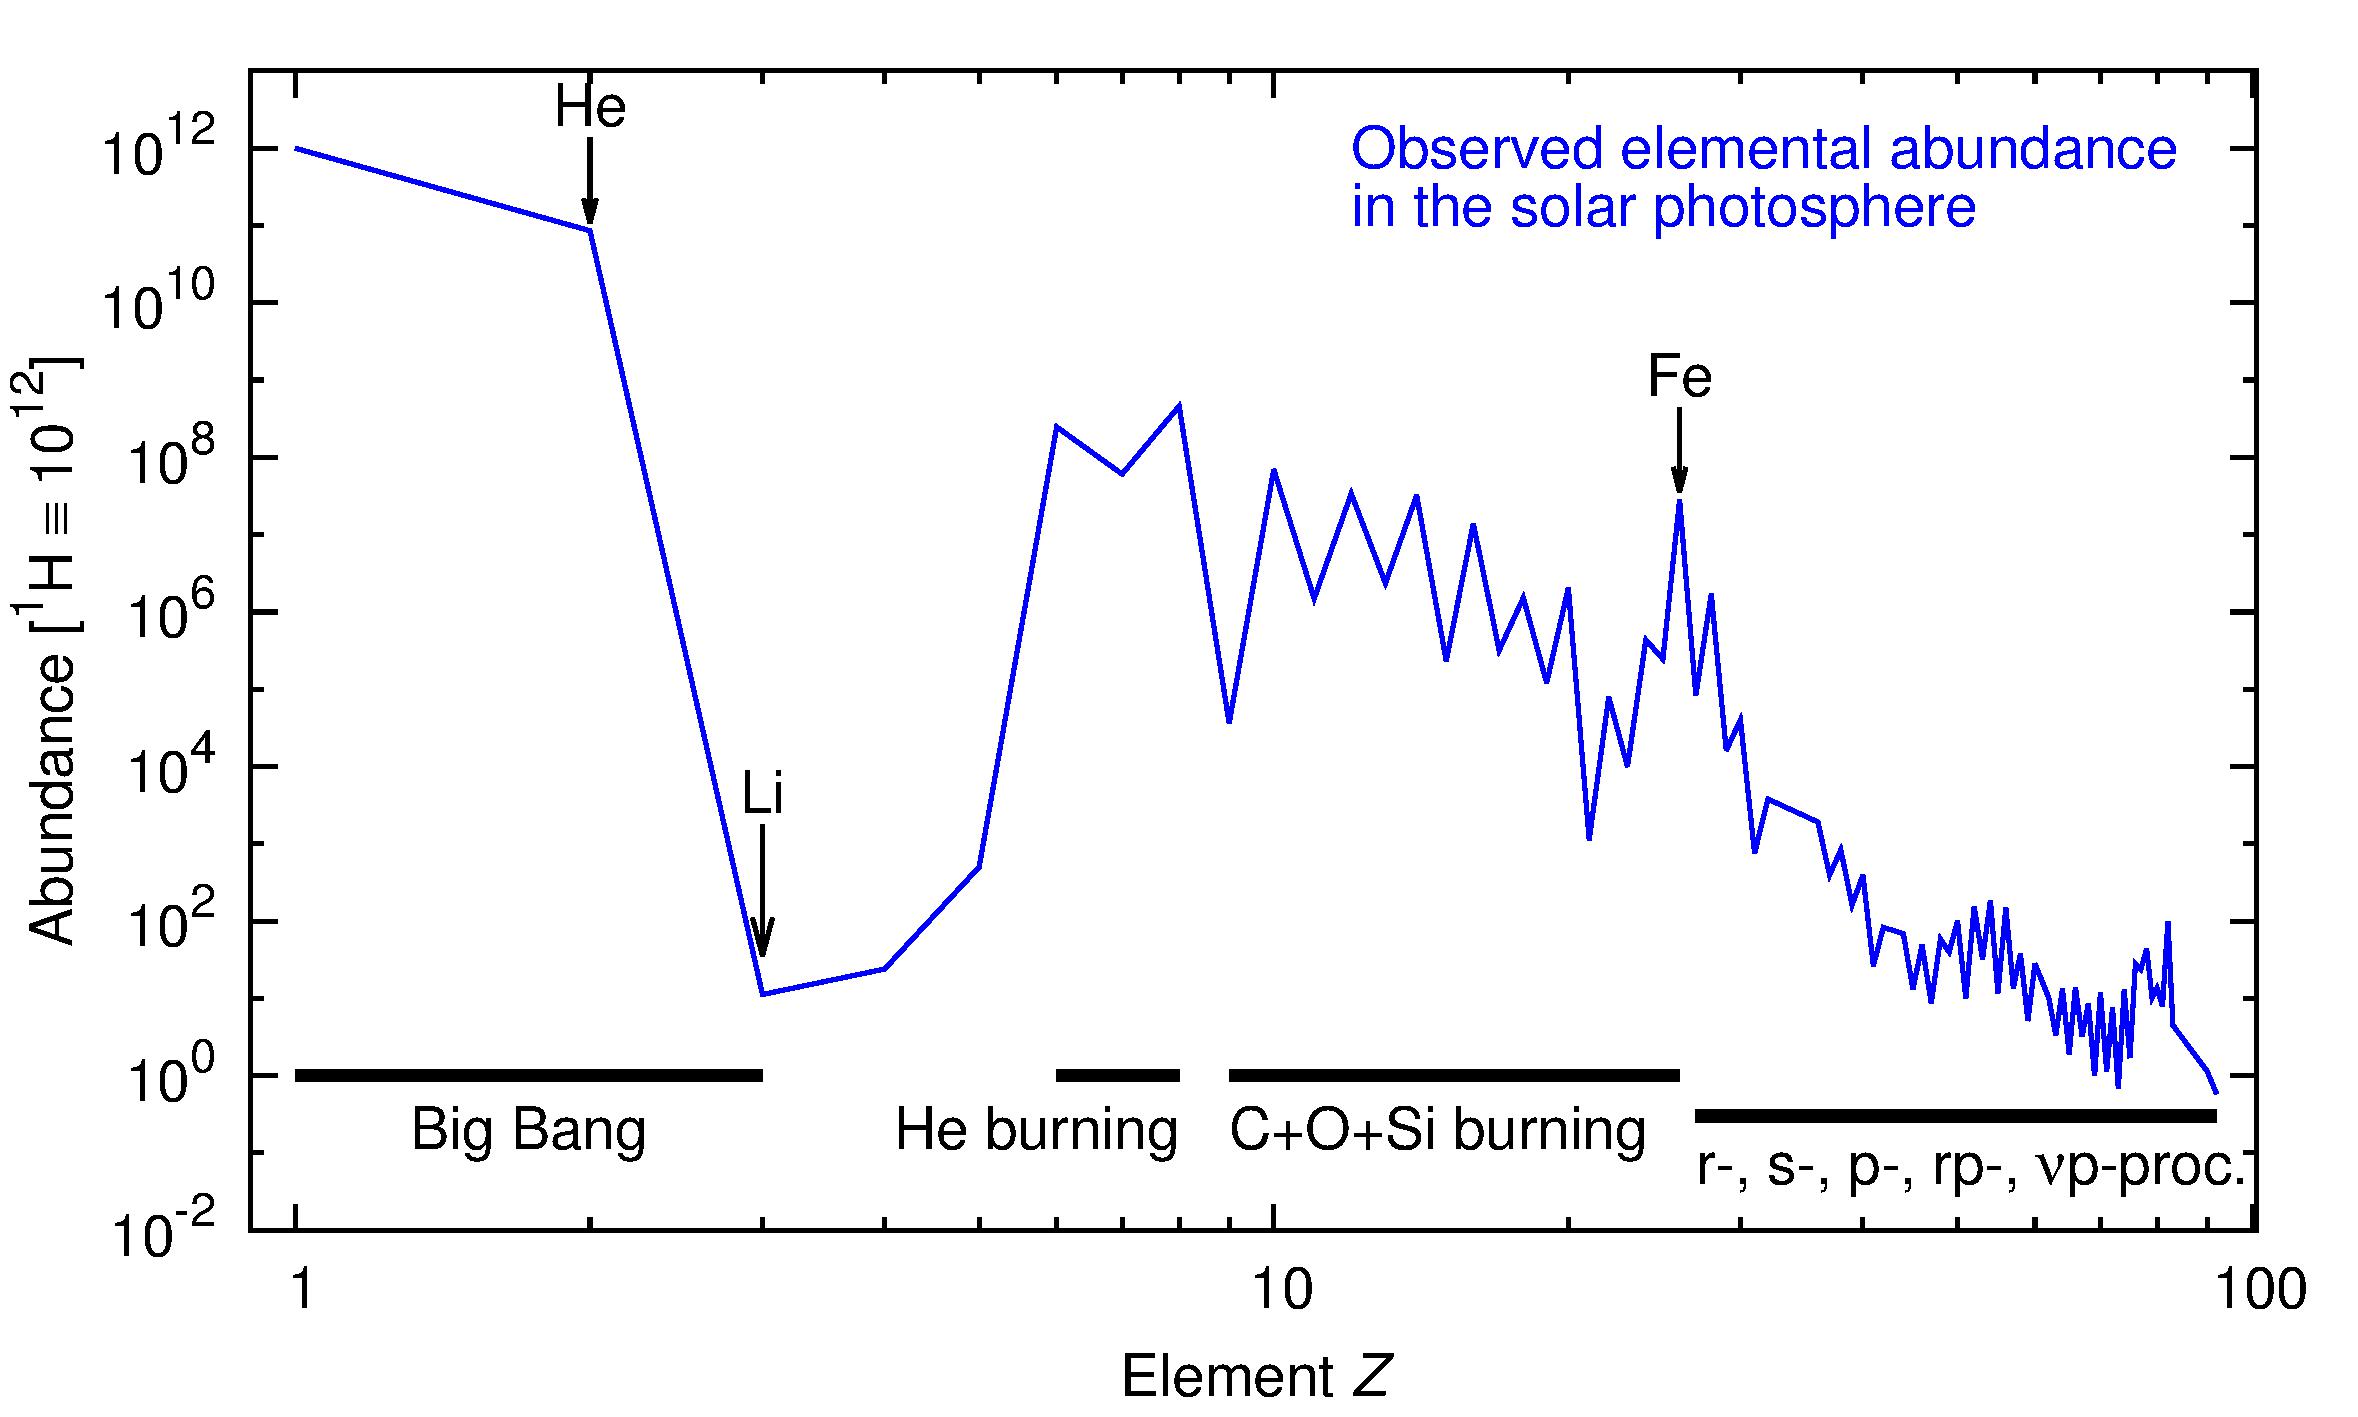 Observed elemental abundances in the solar photosphere (Data by M. Asplund et al. / Nuclear Physics A 777 (2006) 1–4 / plot by D. Bemmerer) ©Copyright: PD Dr. Bemmerer, Daniel